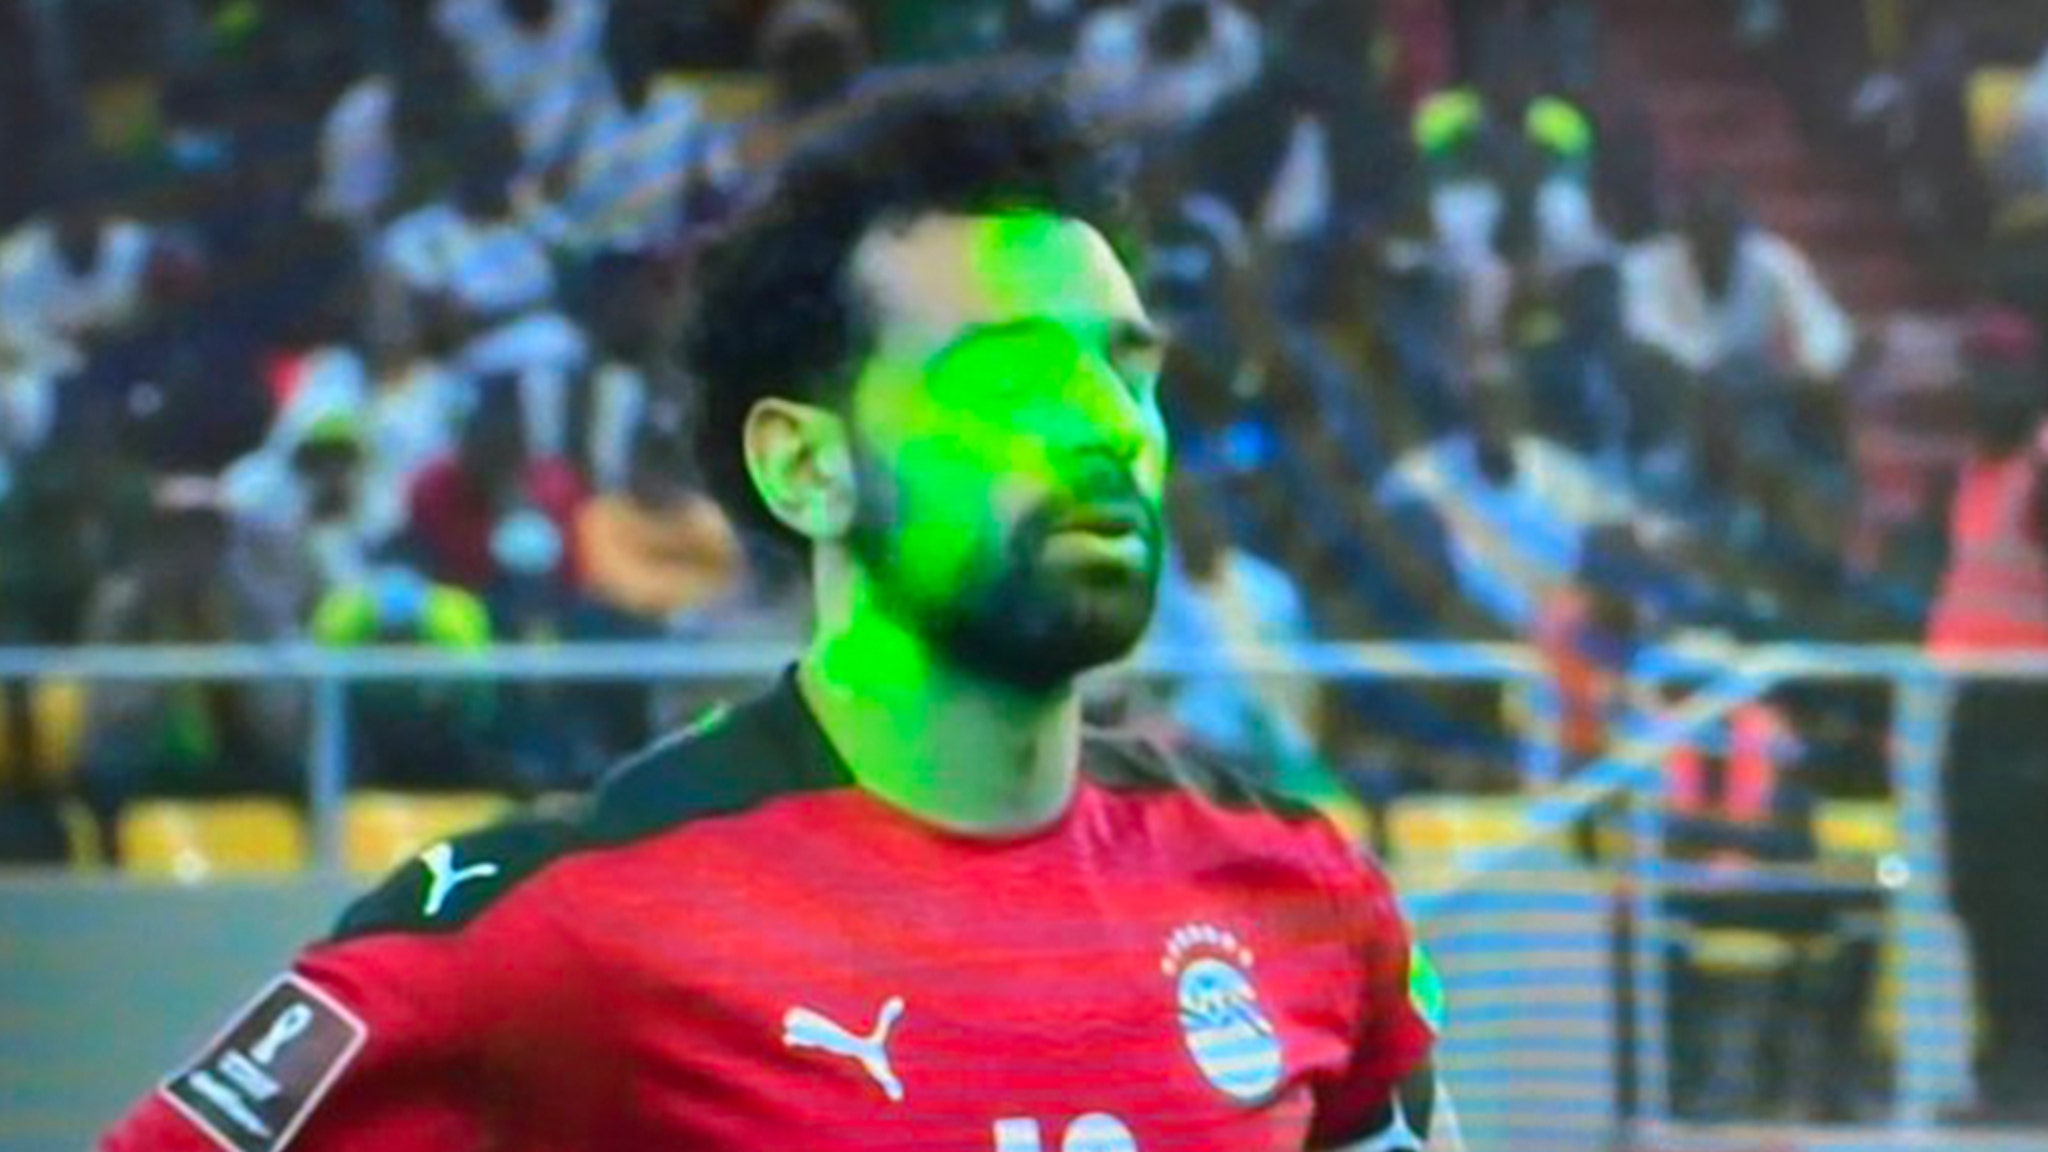 Mohamed Salah rate le penalty après que les supporters lui aient braqué un laser au visage, l’Égypte est exclue de la Coupe du monde